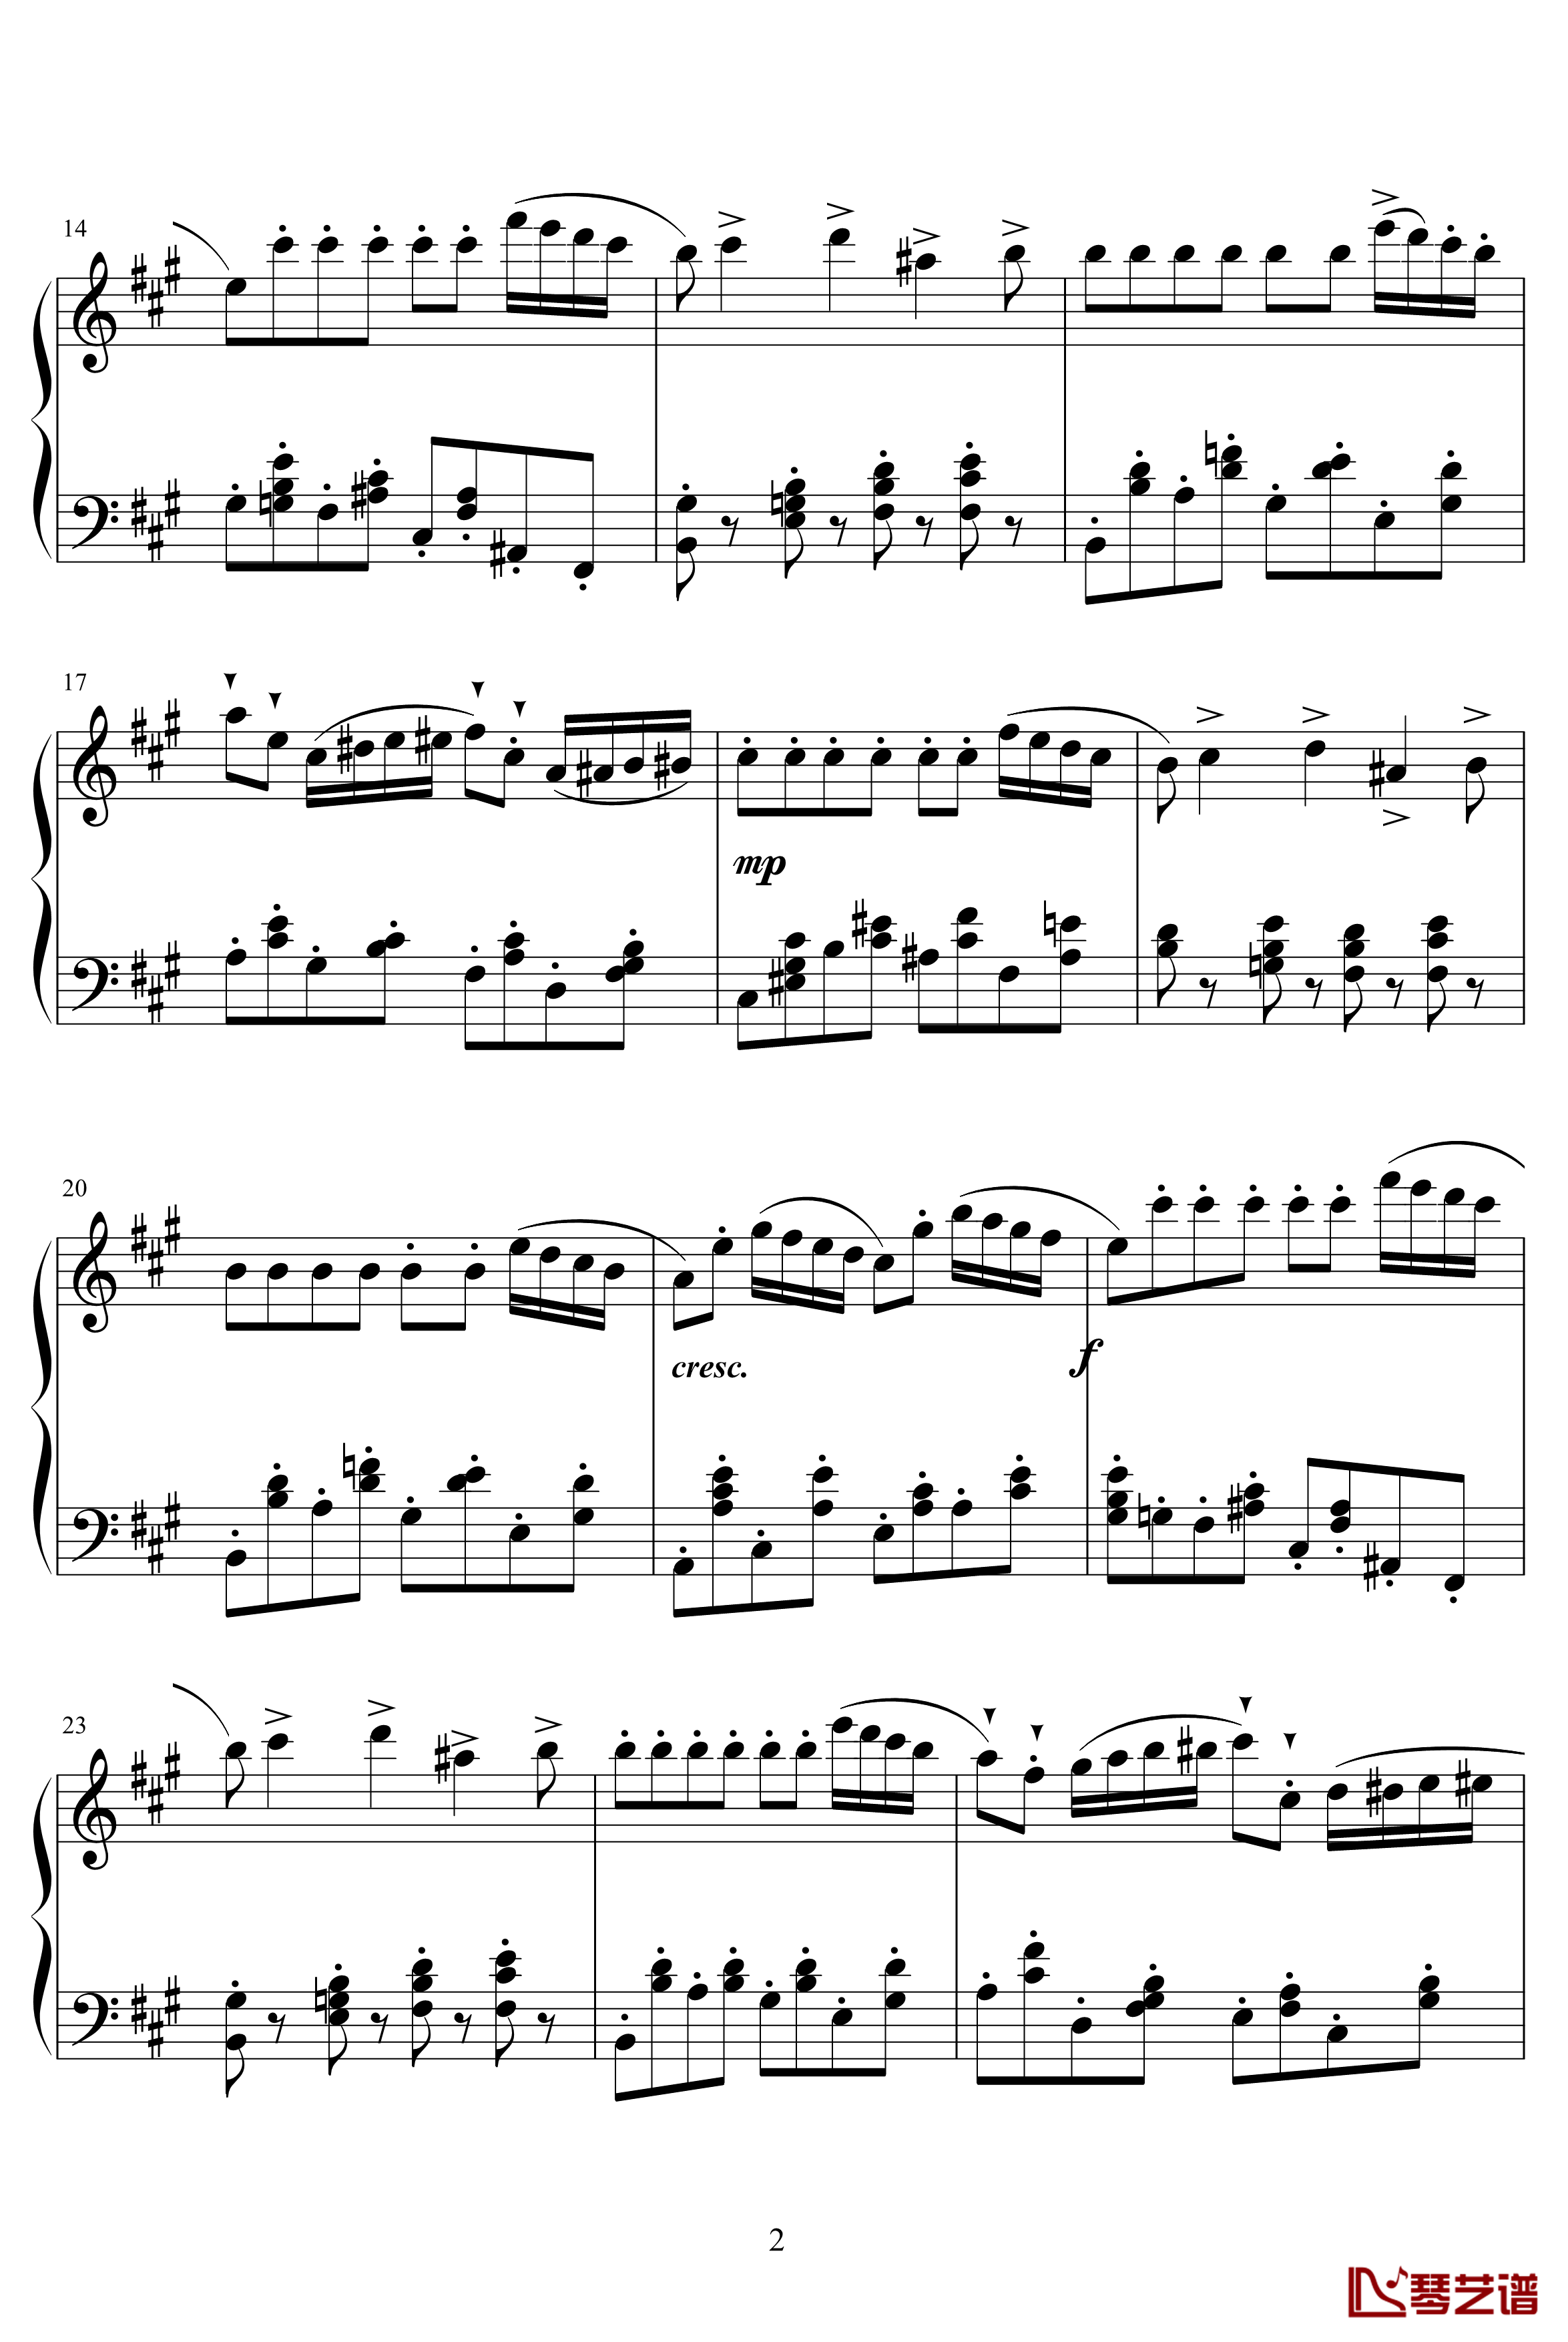 四小天鹅舞曲Charm2版钢琴谱-柴科夫斯基-Peter Ilyich Tchaikovsky2